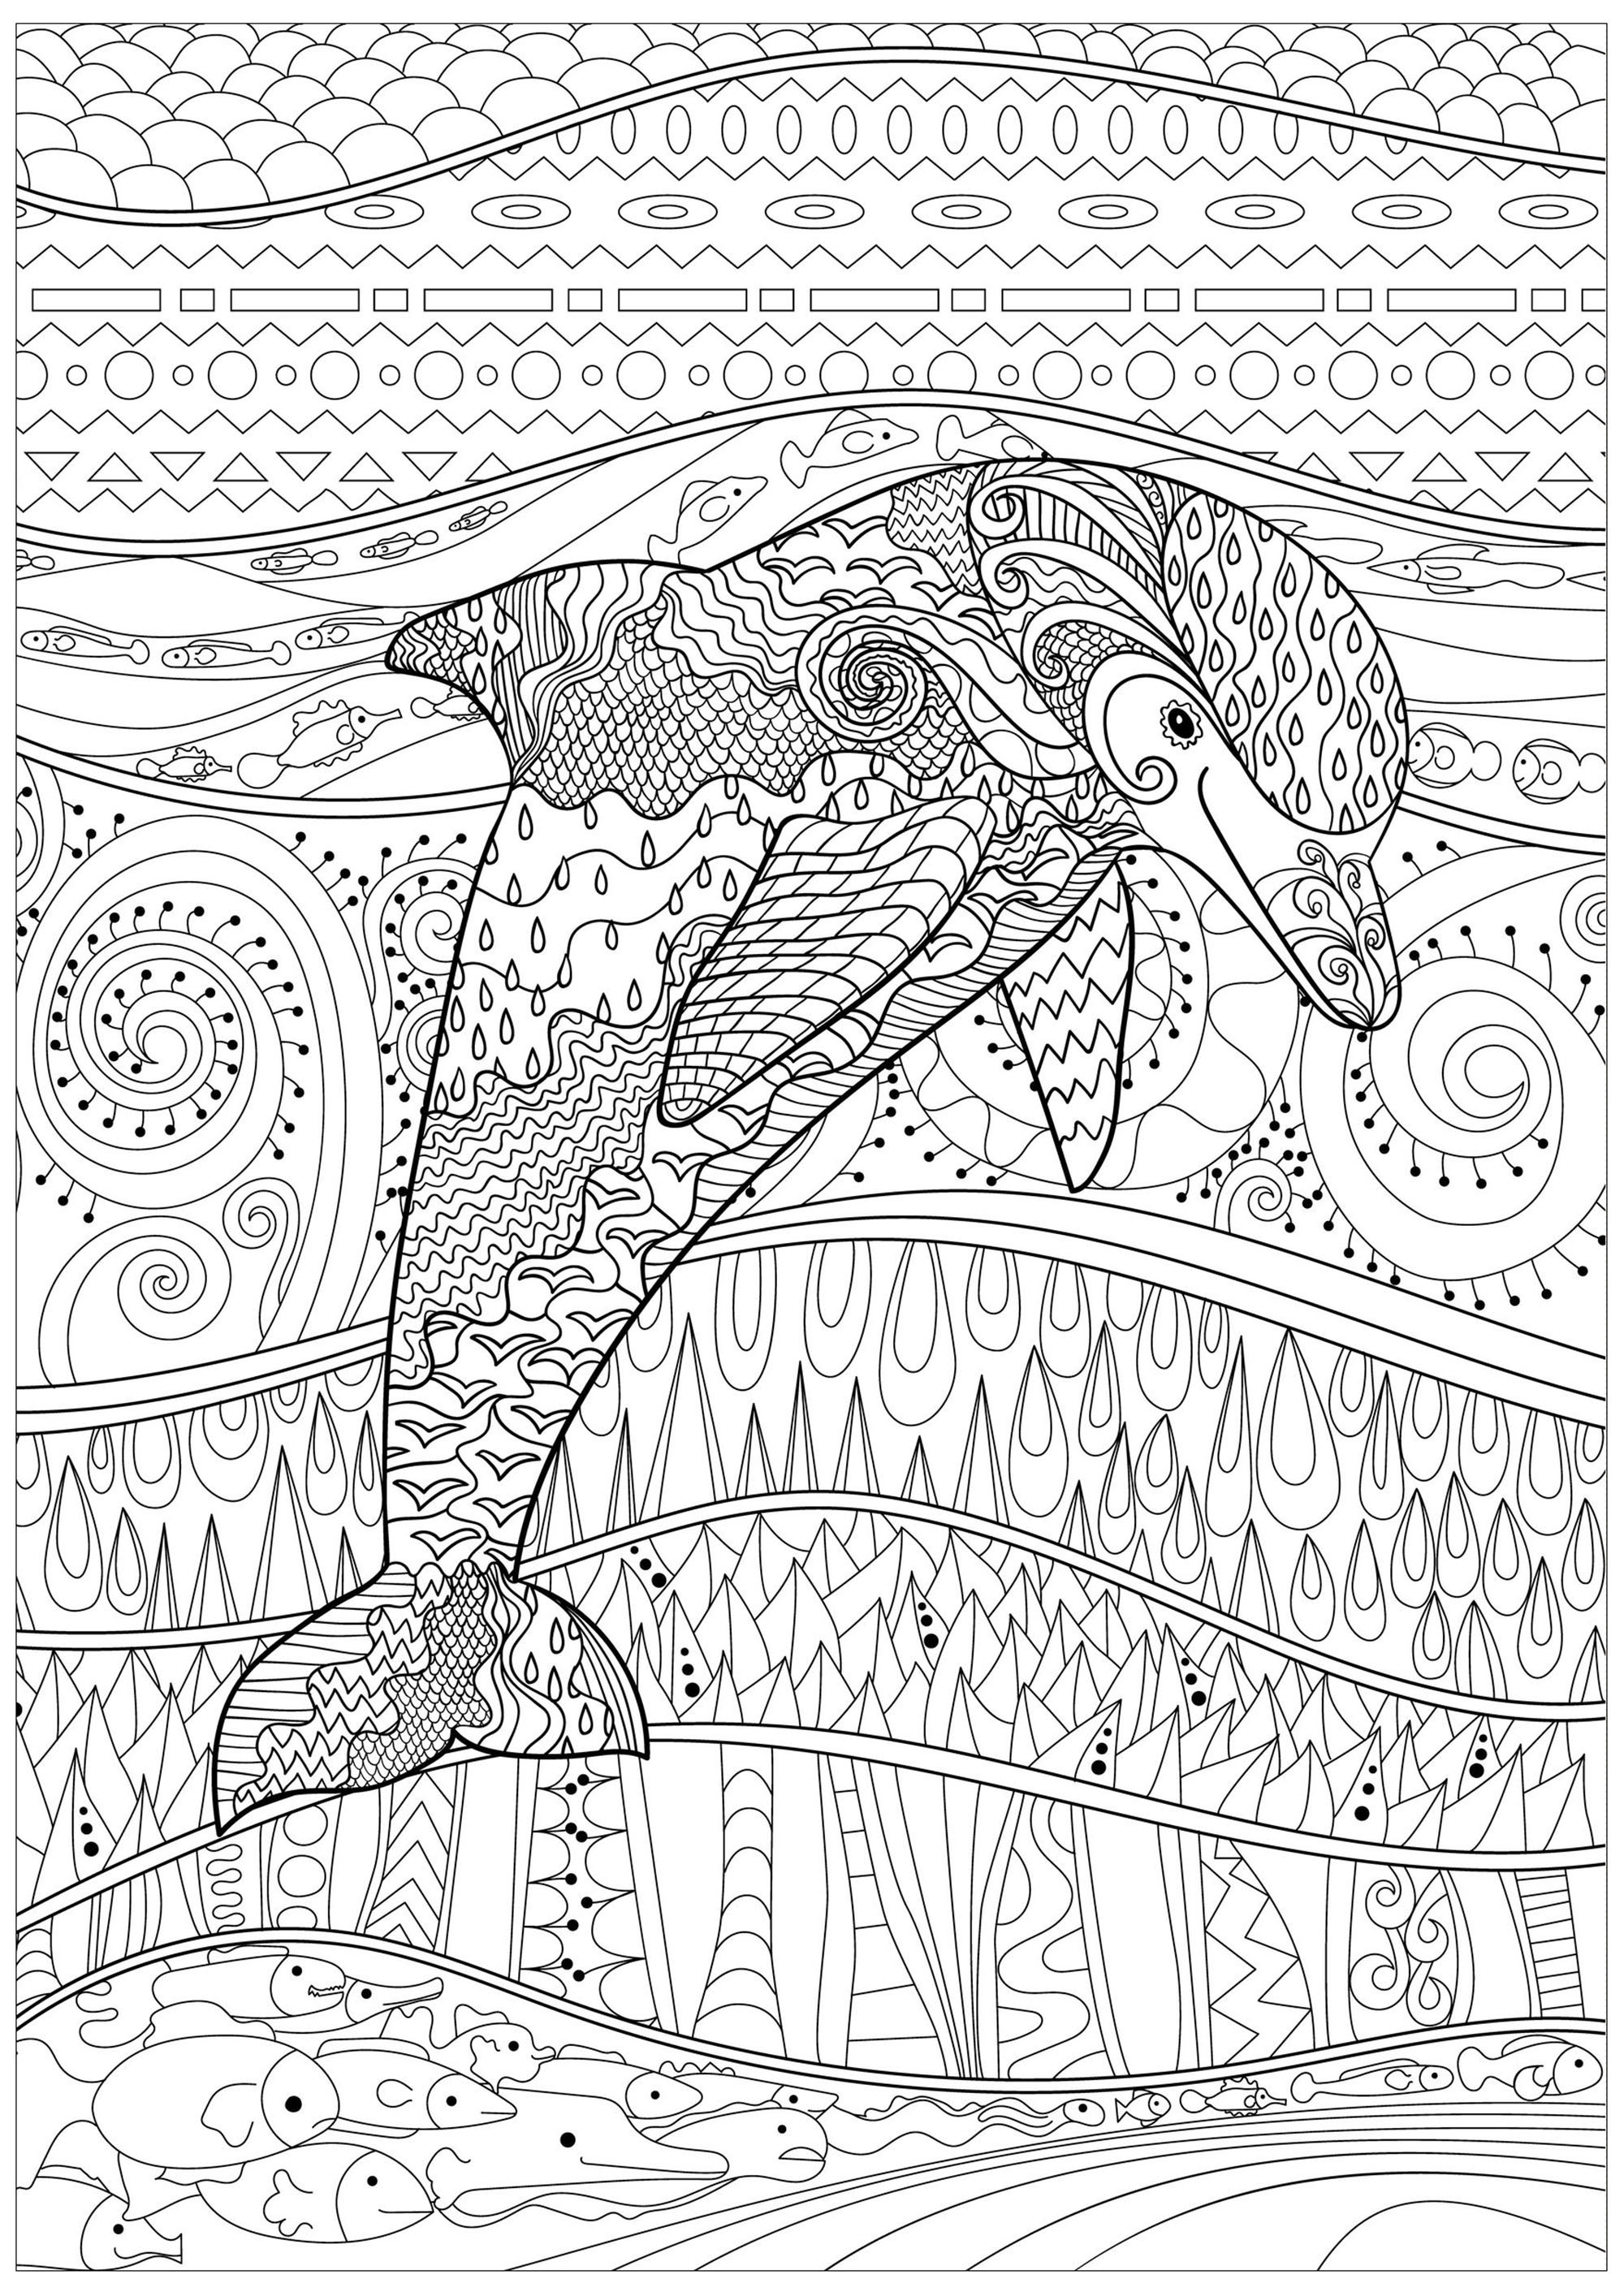 Delfín en un mar en calma, con peces y motivos preciosos, abstractos y complejos, dentro y fuera de su cuerpo, Origen : 123rf   Artista : Anna Lezhepekova